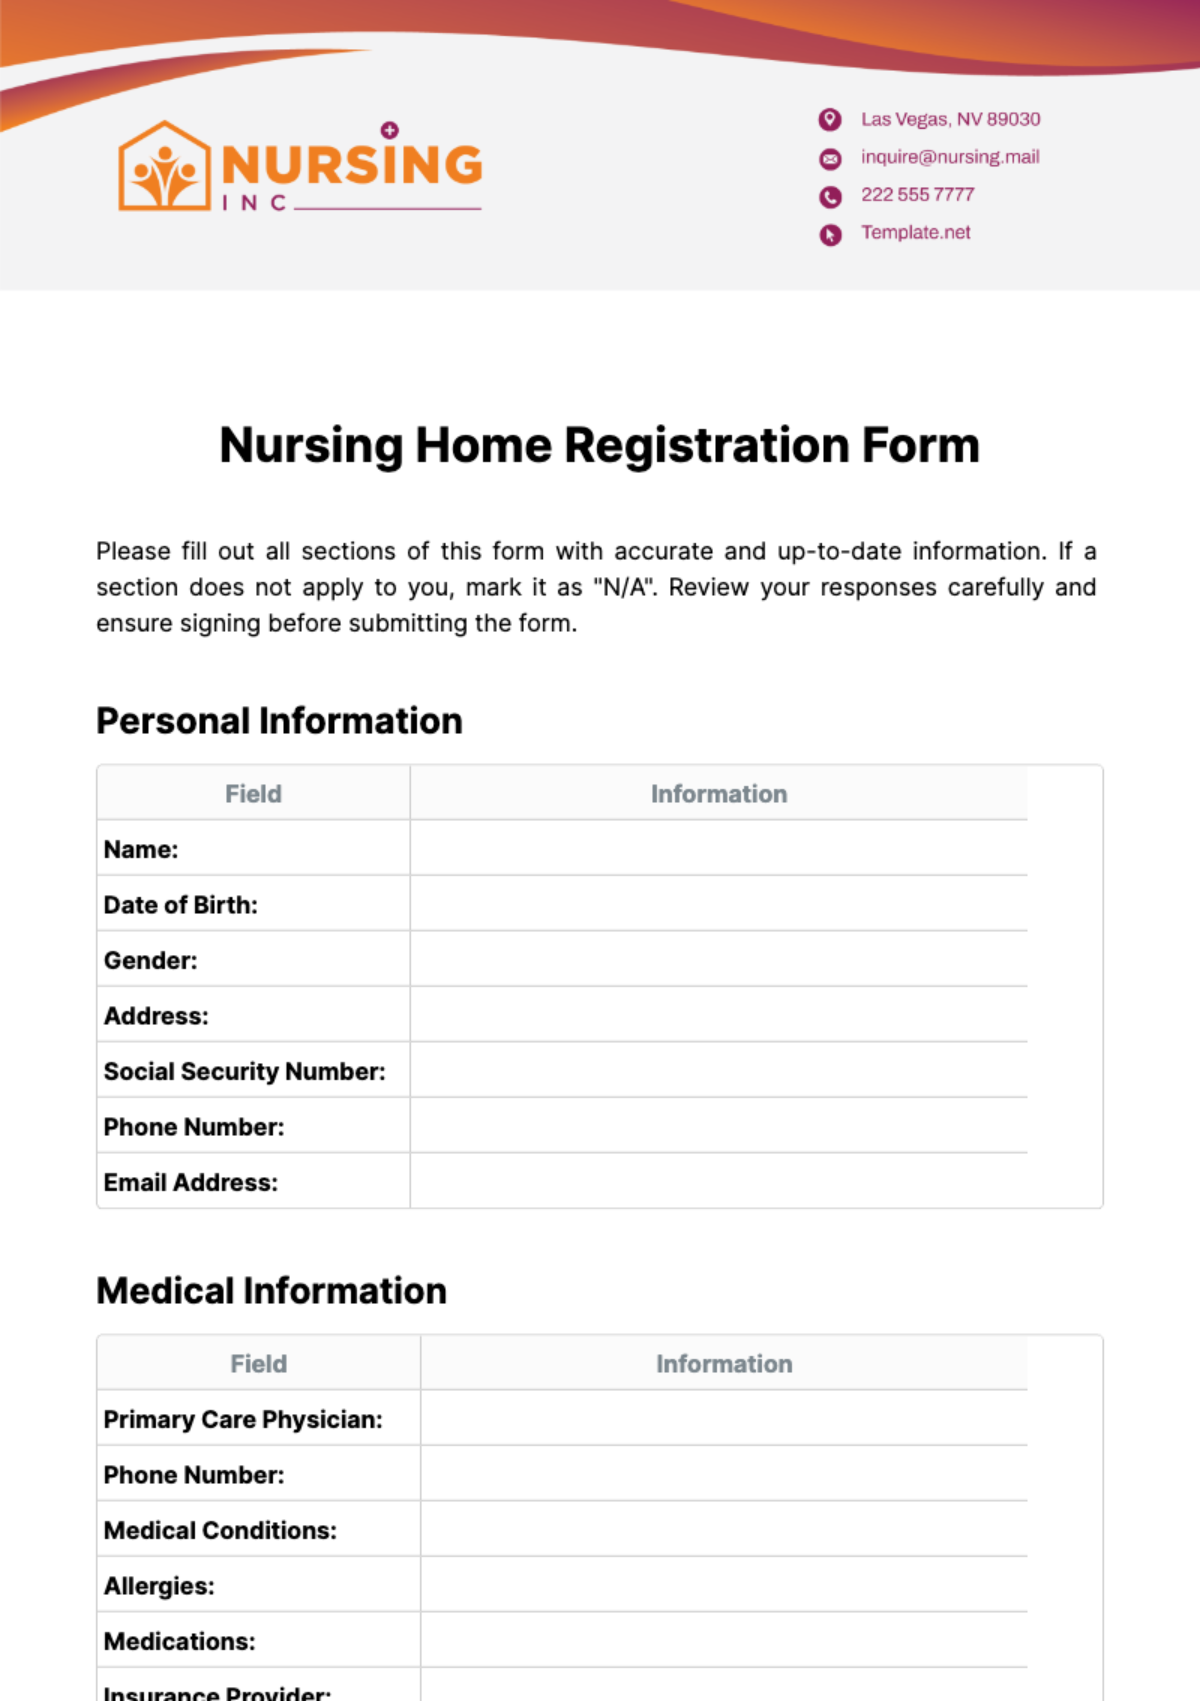 Nursing Home Registration Form Template